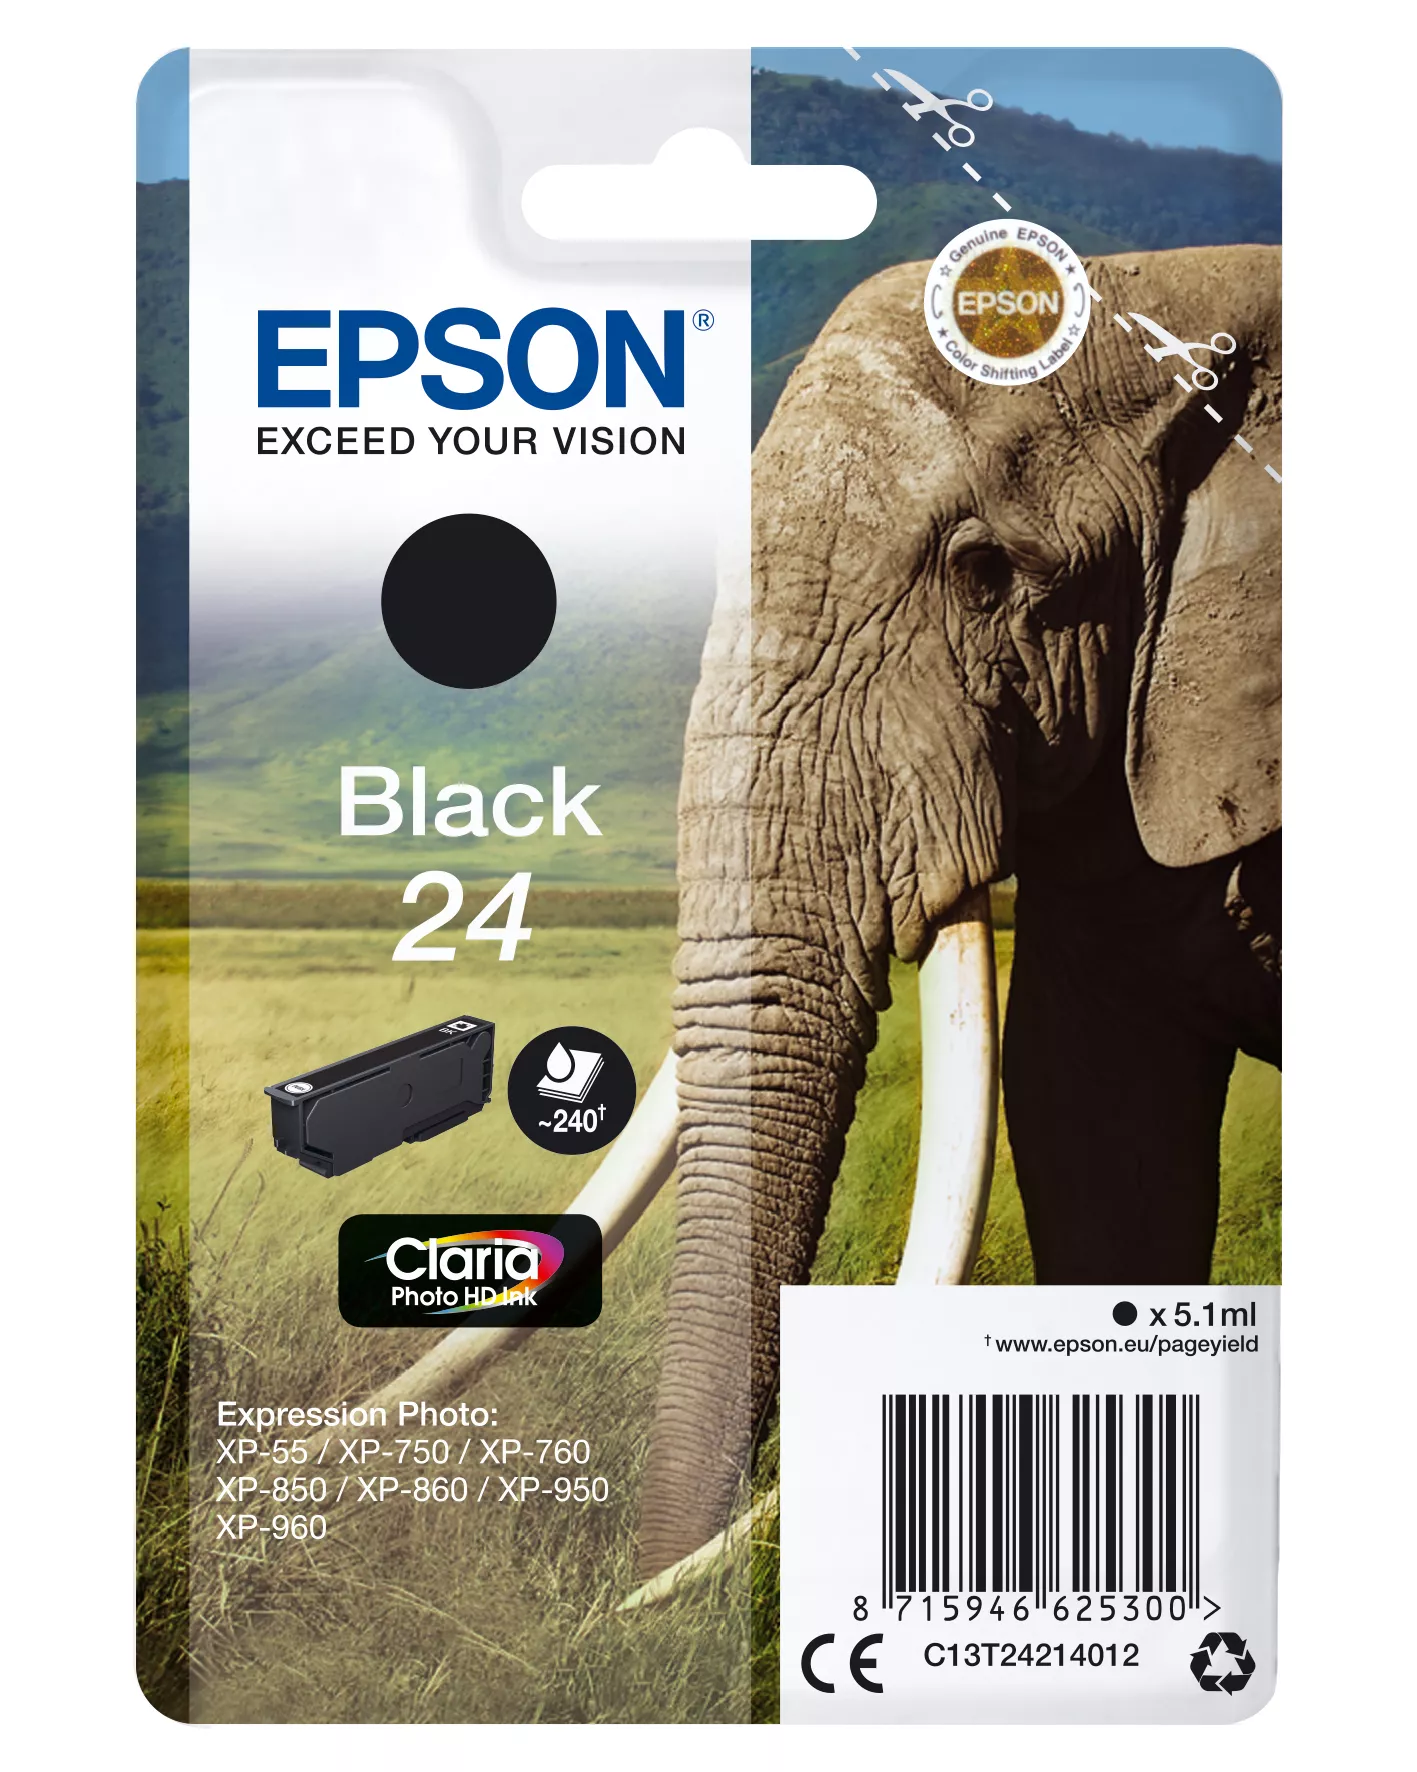 Achat EPSON 24 cartouche d encre noir capacité standard 5.1ml 240 au meilleur prix